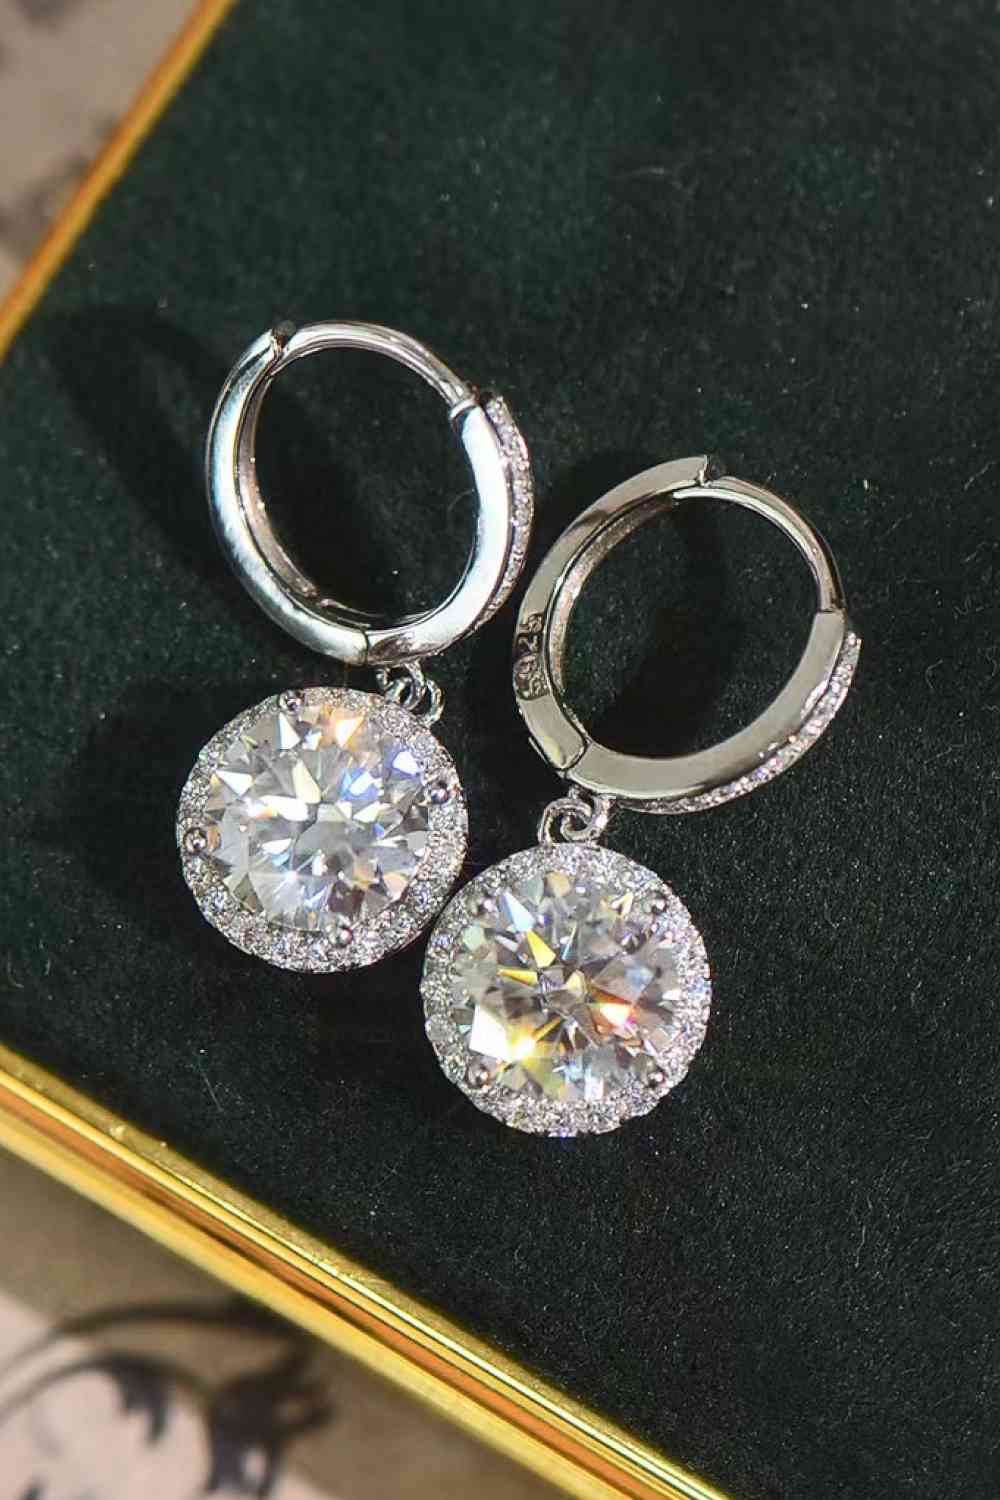 a pair of earrings on a black velvet surface